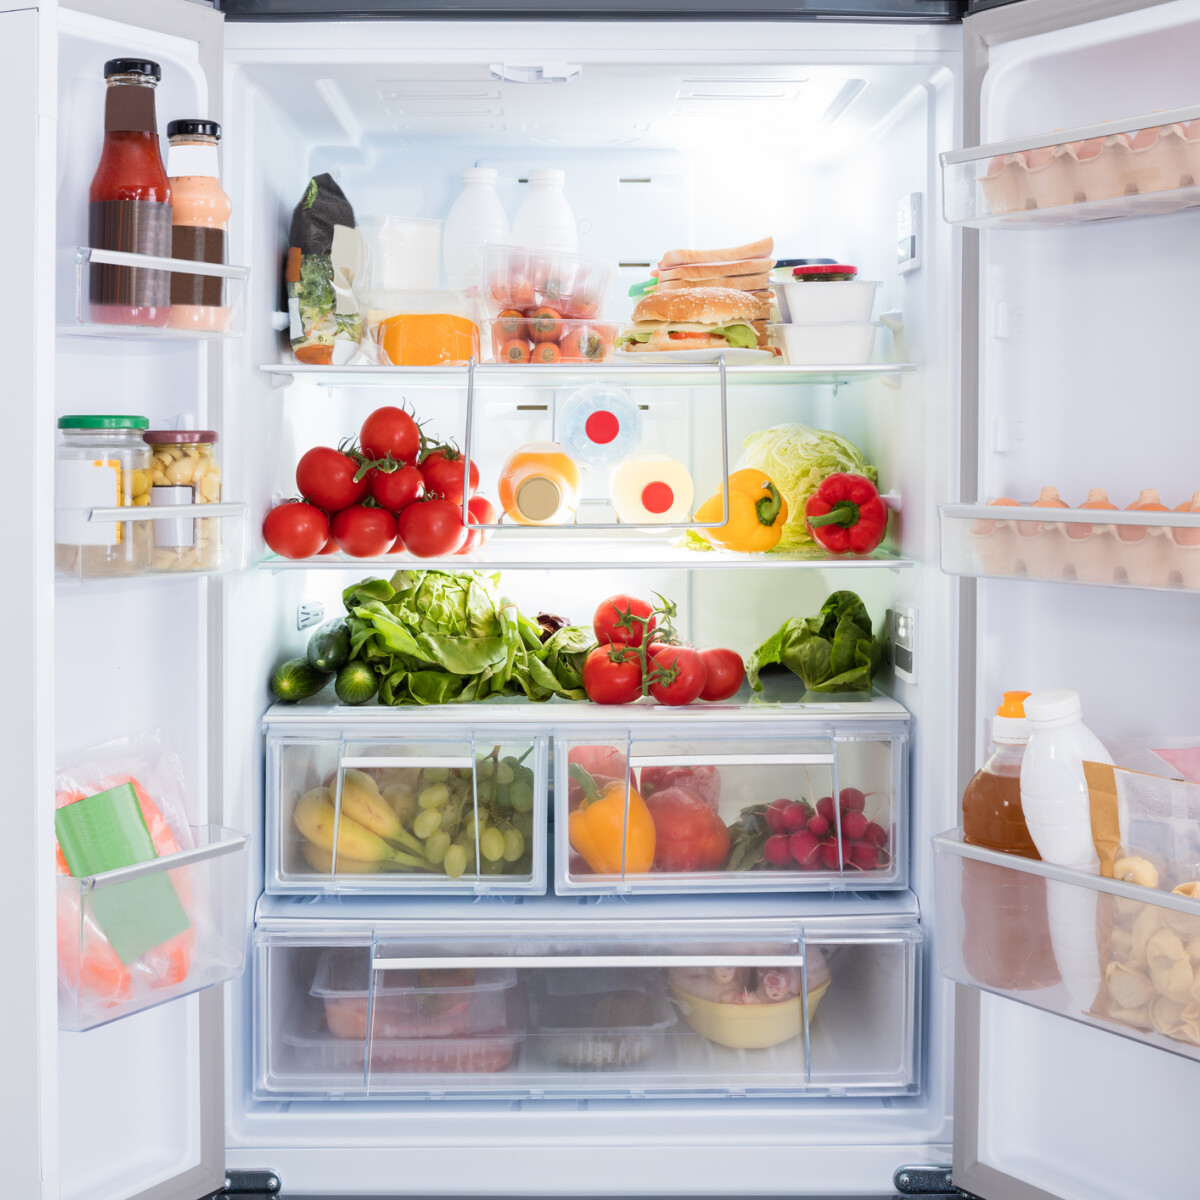 Így szabadulhatsz meg örökre a hűtődben lévő penésztől